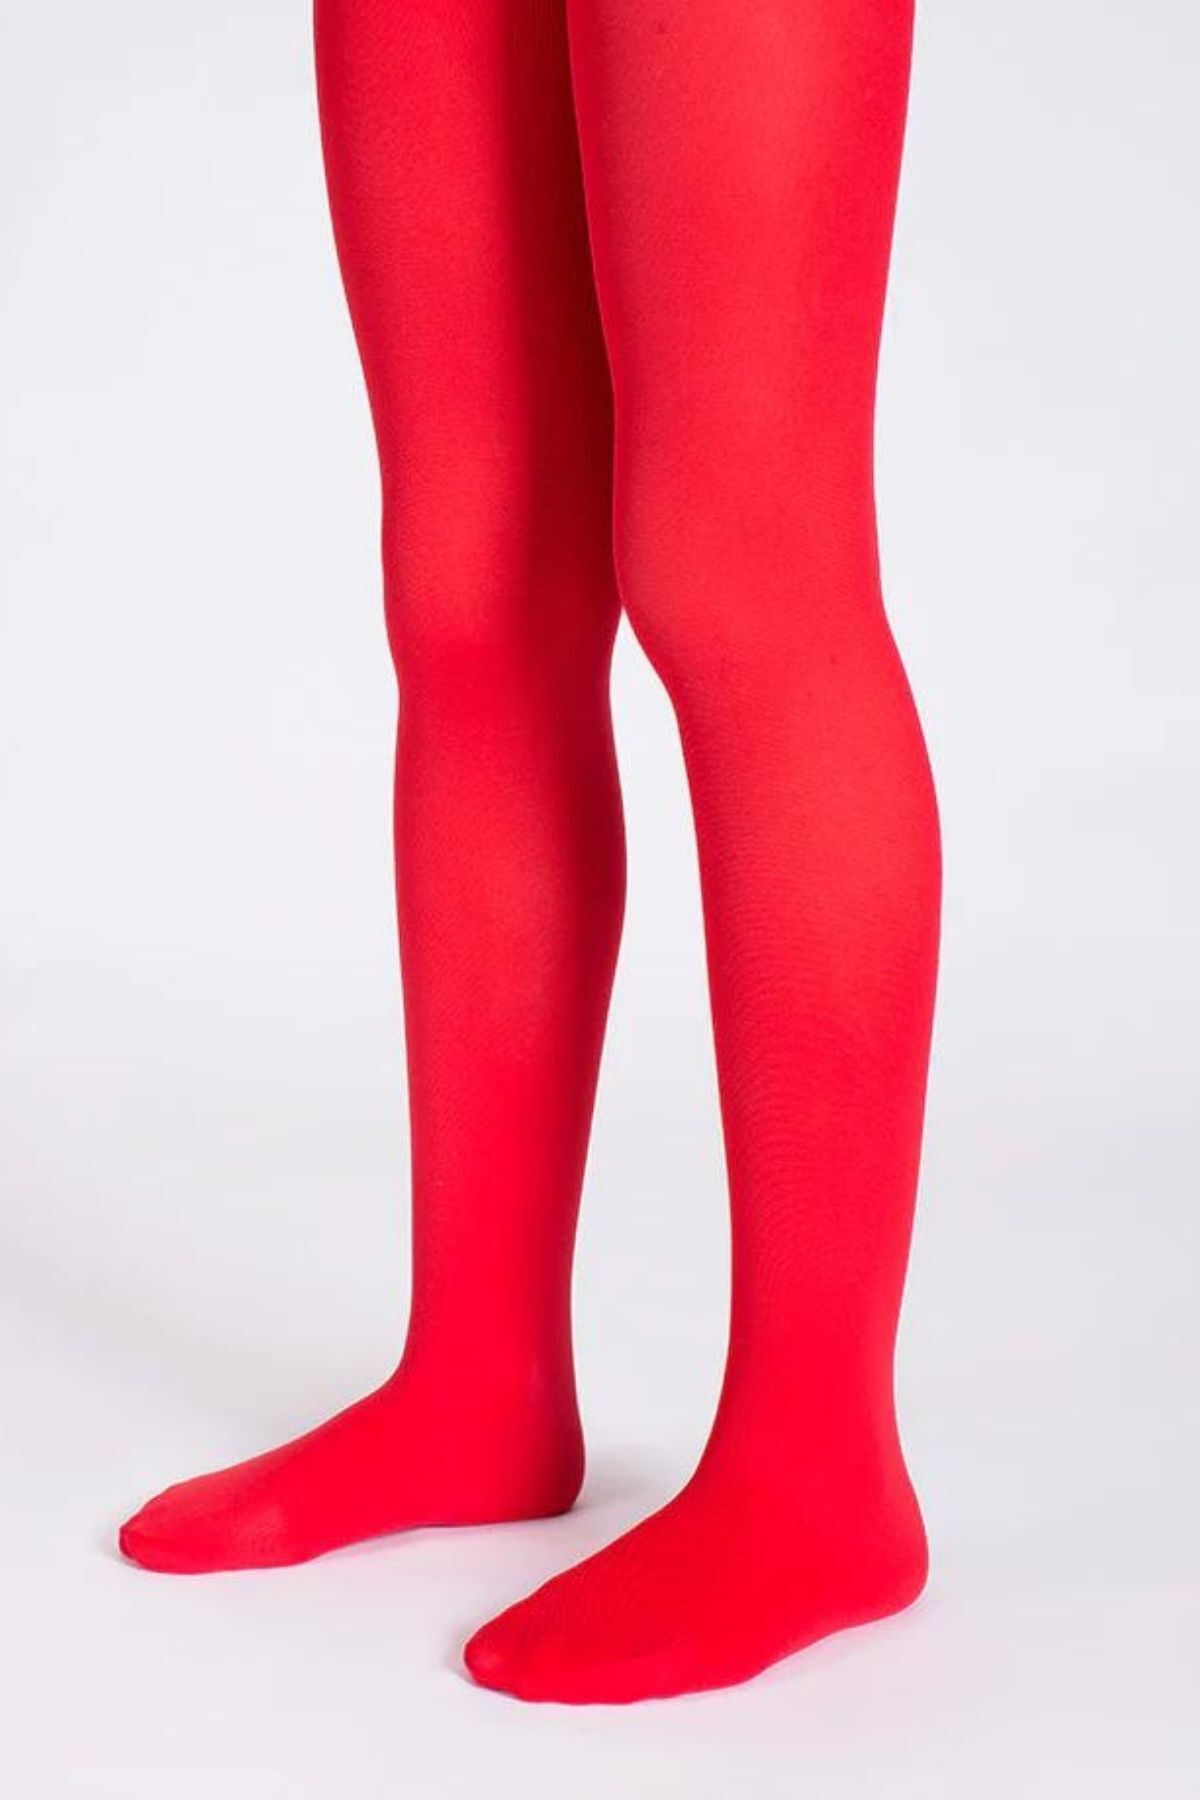 Goose Klasik Kırmızı Kız Çocuk Külotlu Çorap